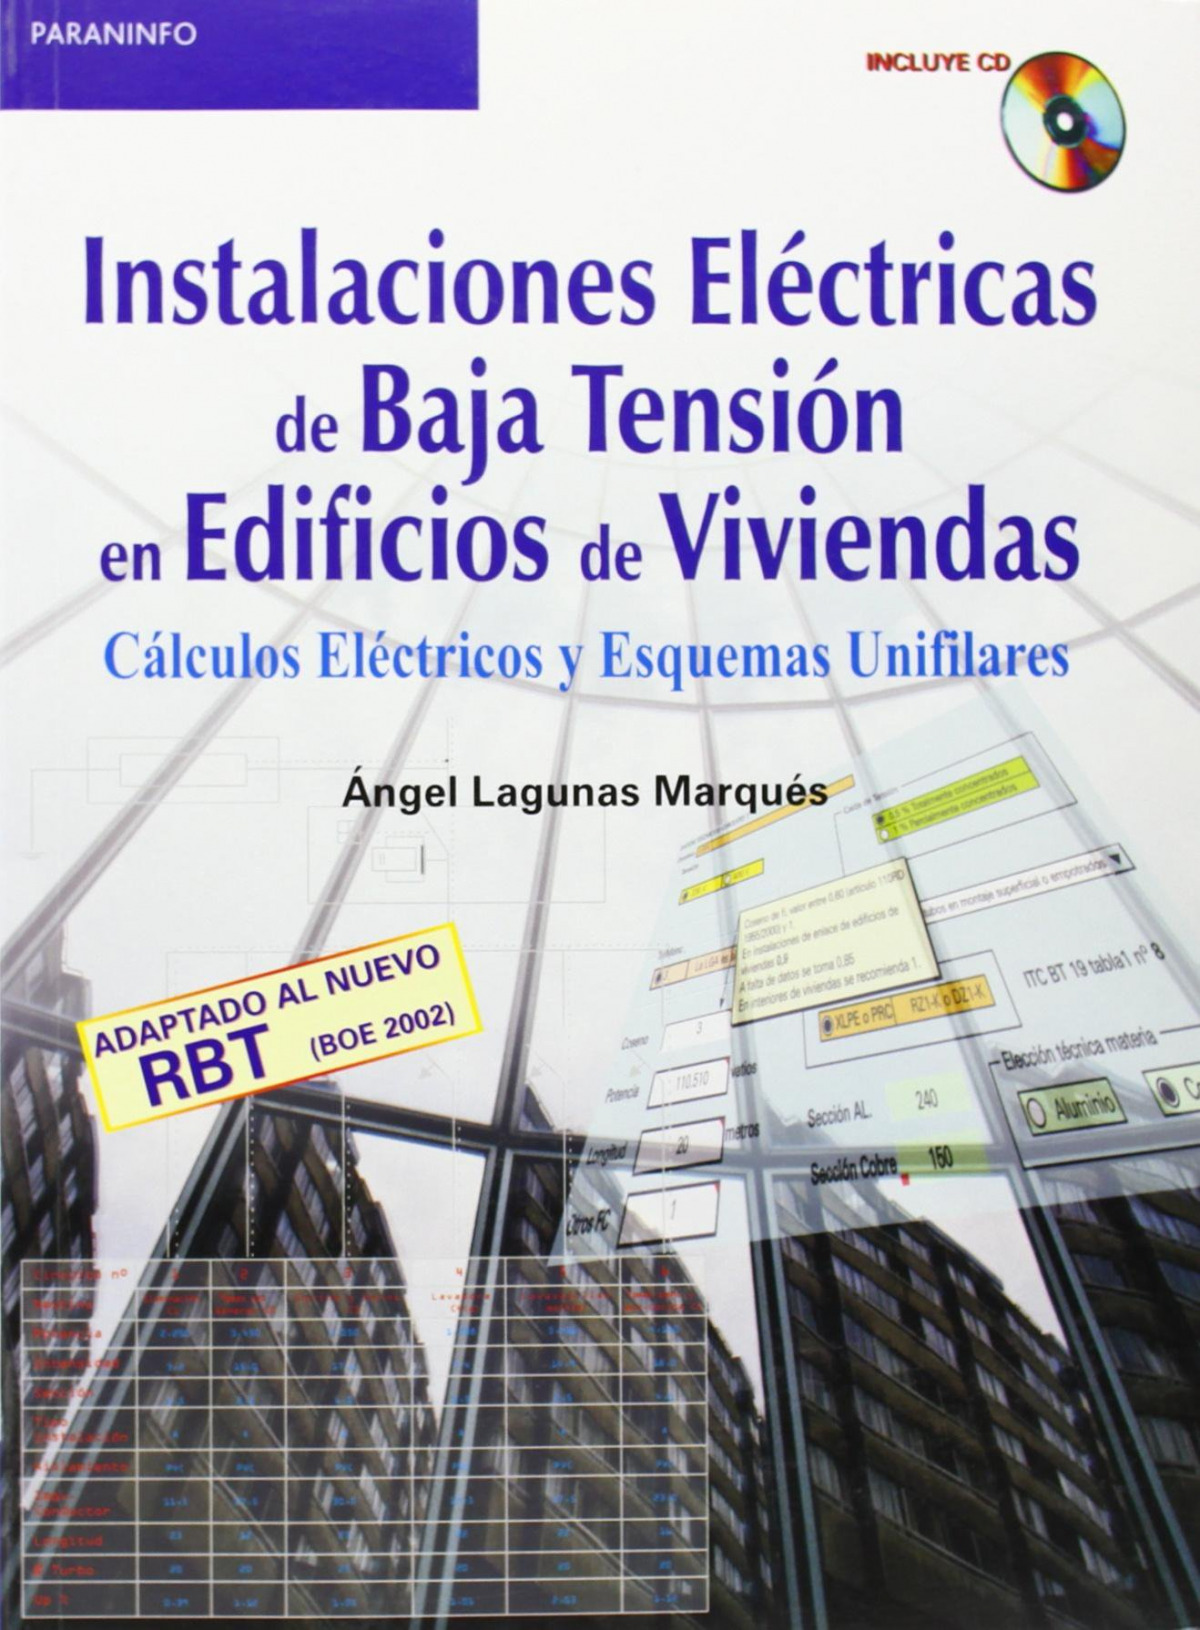 Instalaciones electricas de baja tension en edificios de viviendas - Lagunas, Angel